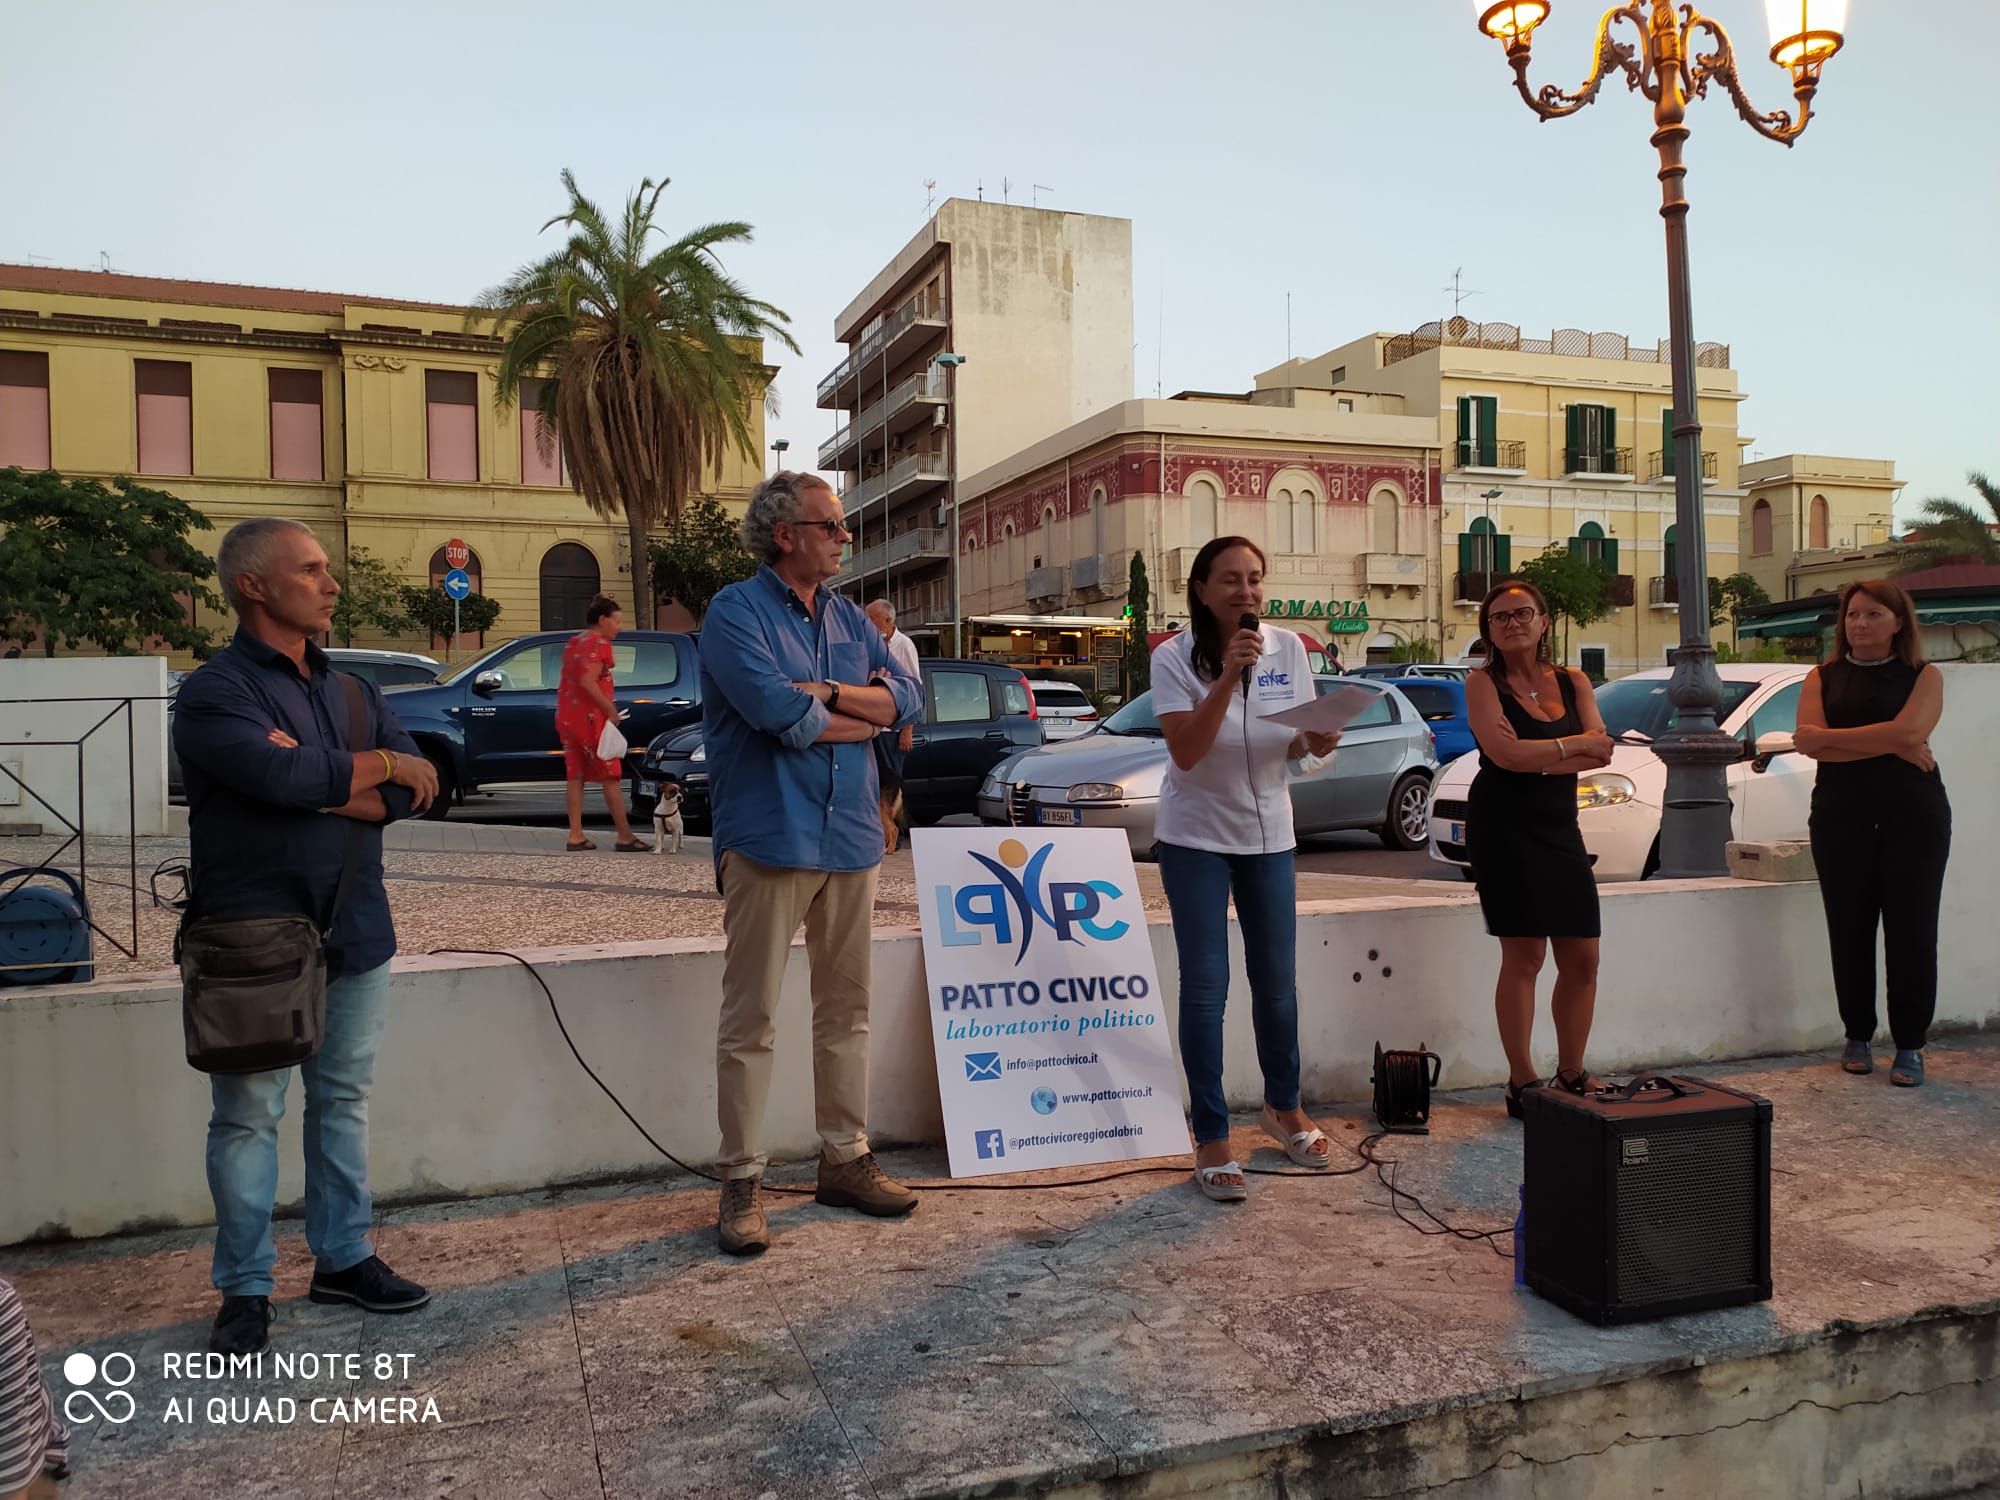 Elezioni Reggio Calabria, da Patto civico: proposte per le politiche familiari e socio-sanitarie